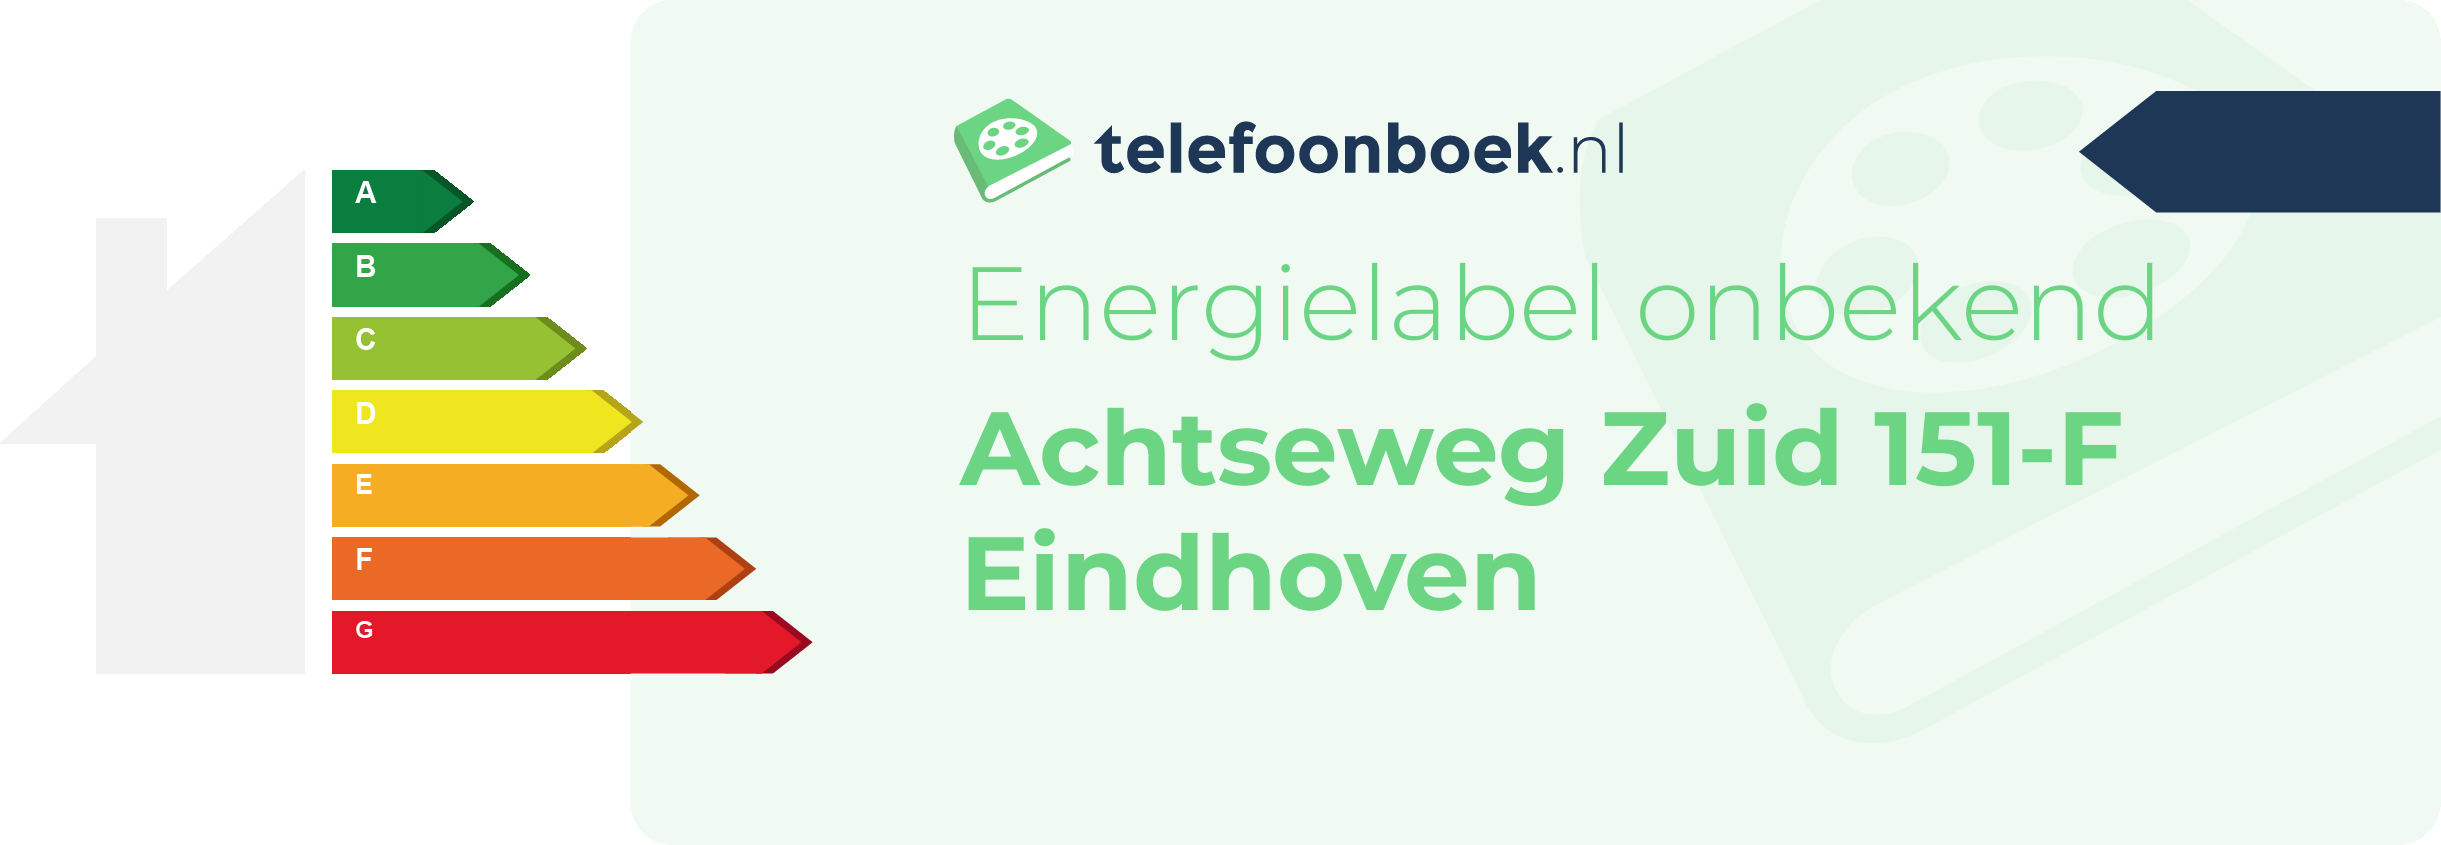 Energielabel Achtseweg Zuid 151-F Eindhoven